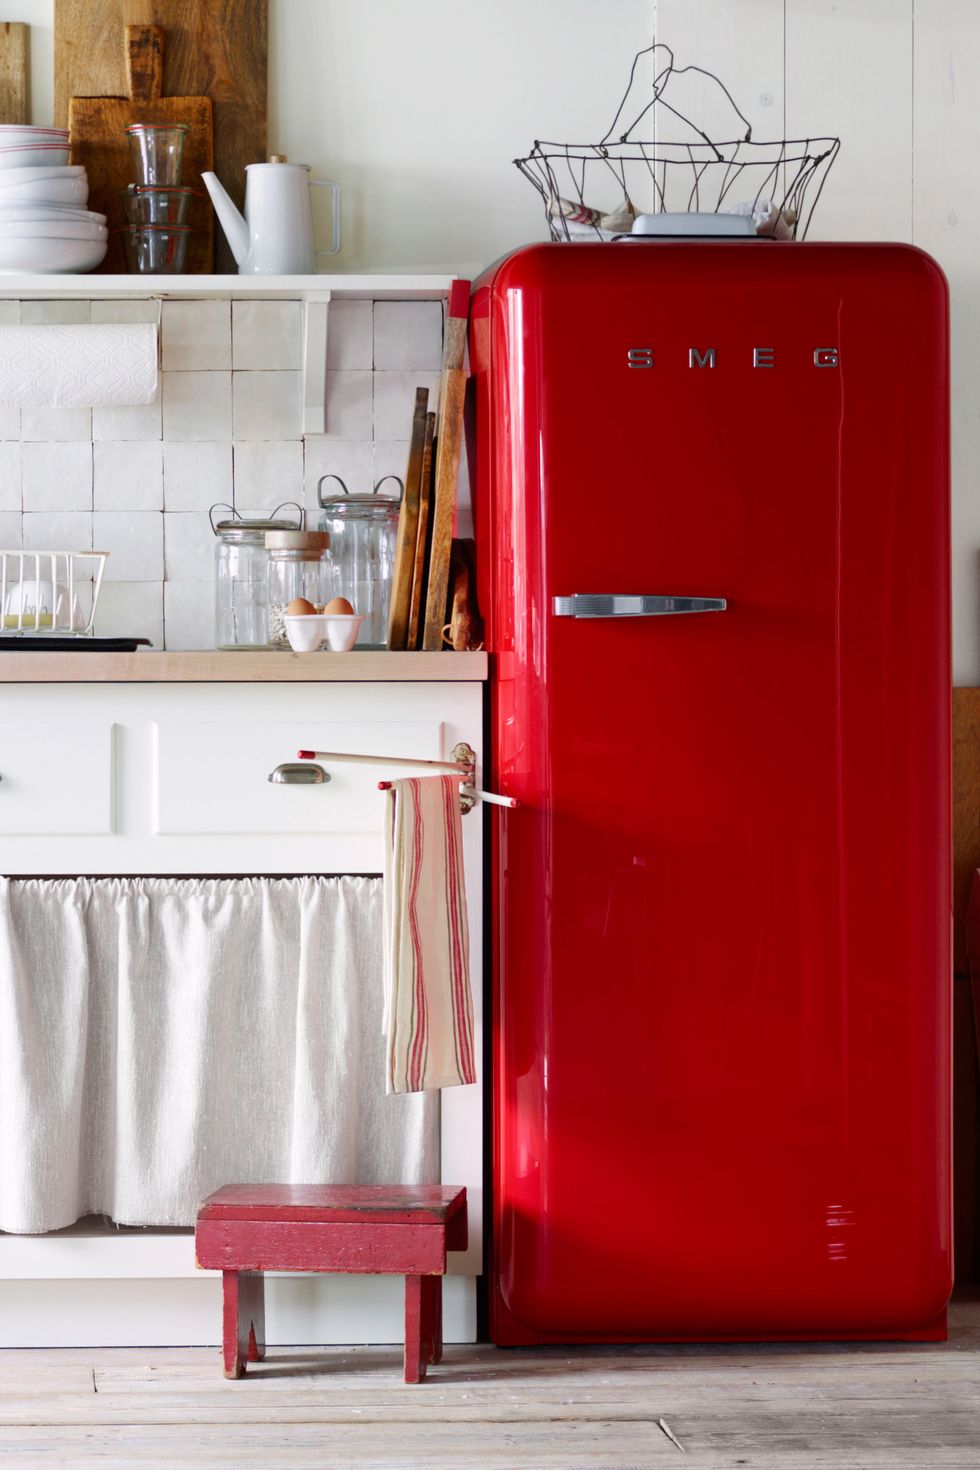 50s Vintage Kitchen Accessories : retro kitchen appliances